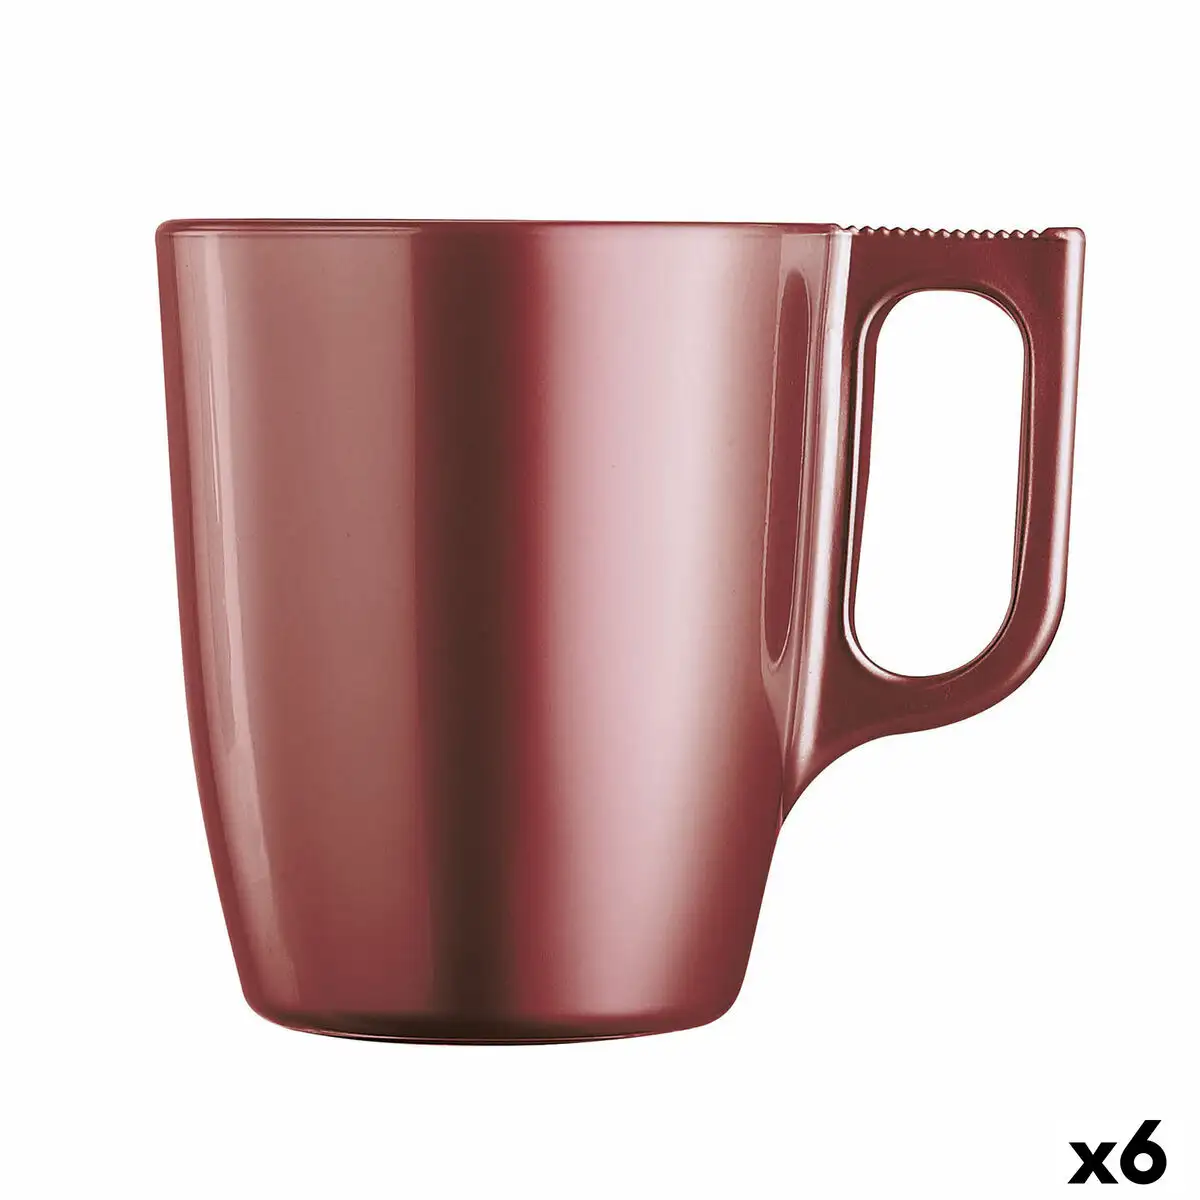 Tasse mug luminarc flashy rouge 250 ml verre 6 unites _4921. Bienvenue sur DIAYTAR SENEGAL - Là où Chaque Objet a une Âme. Plongez dans notre catalogue et trouvez des articles qui portent l'essence de l'artisanat et de la passion.